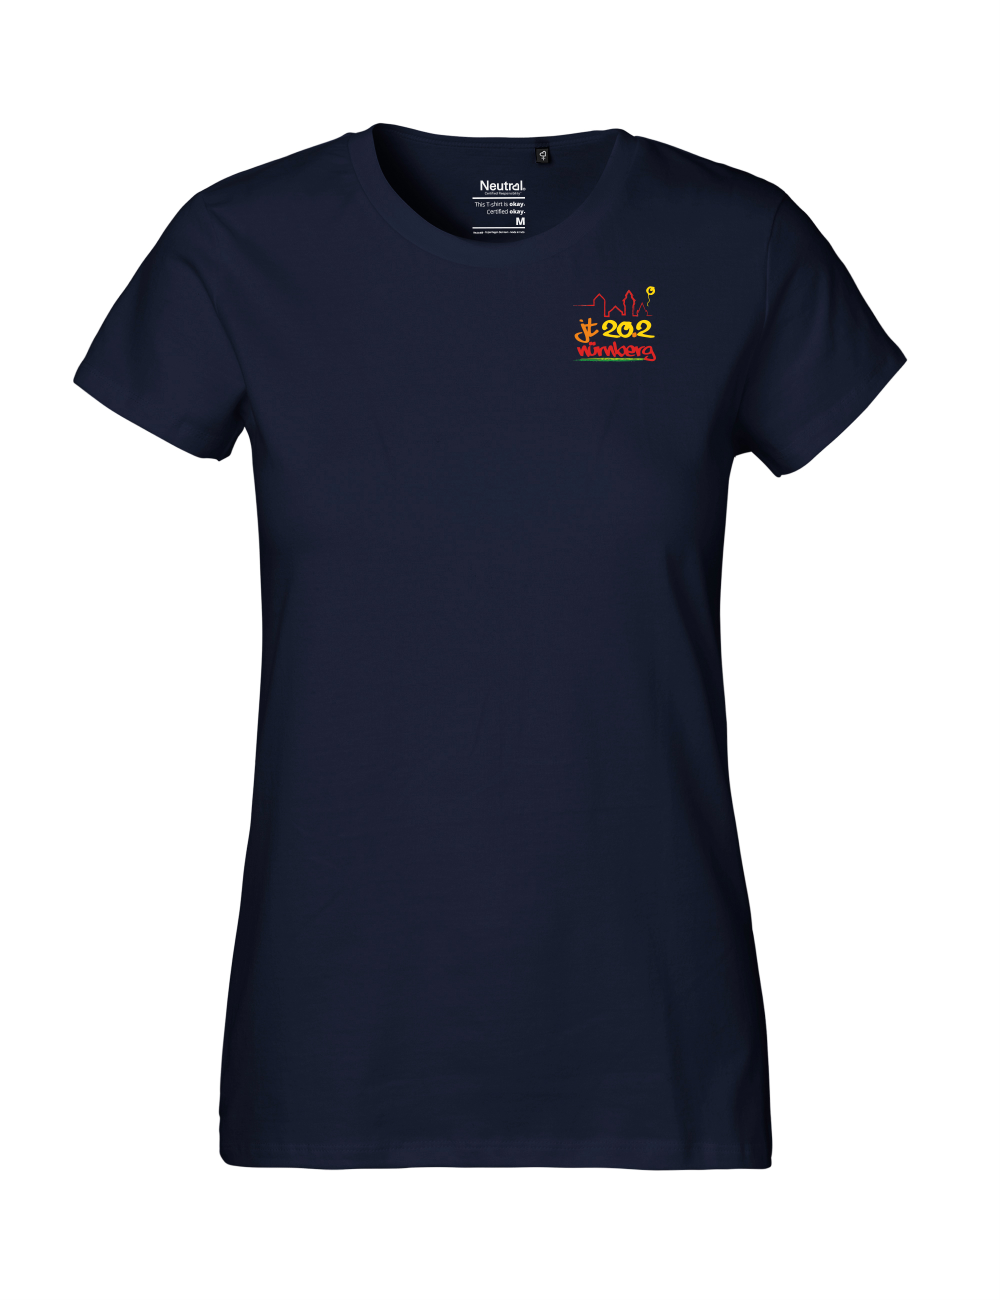 T-Shirt Damen "JT2022" Premium